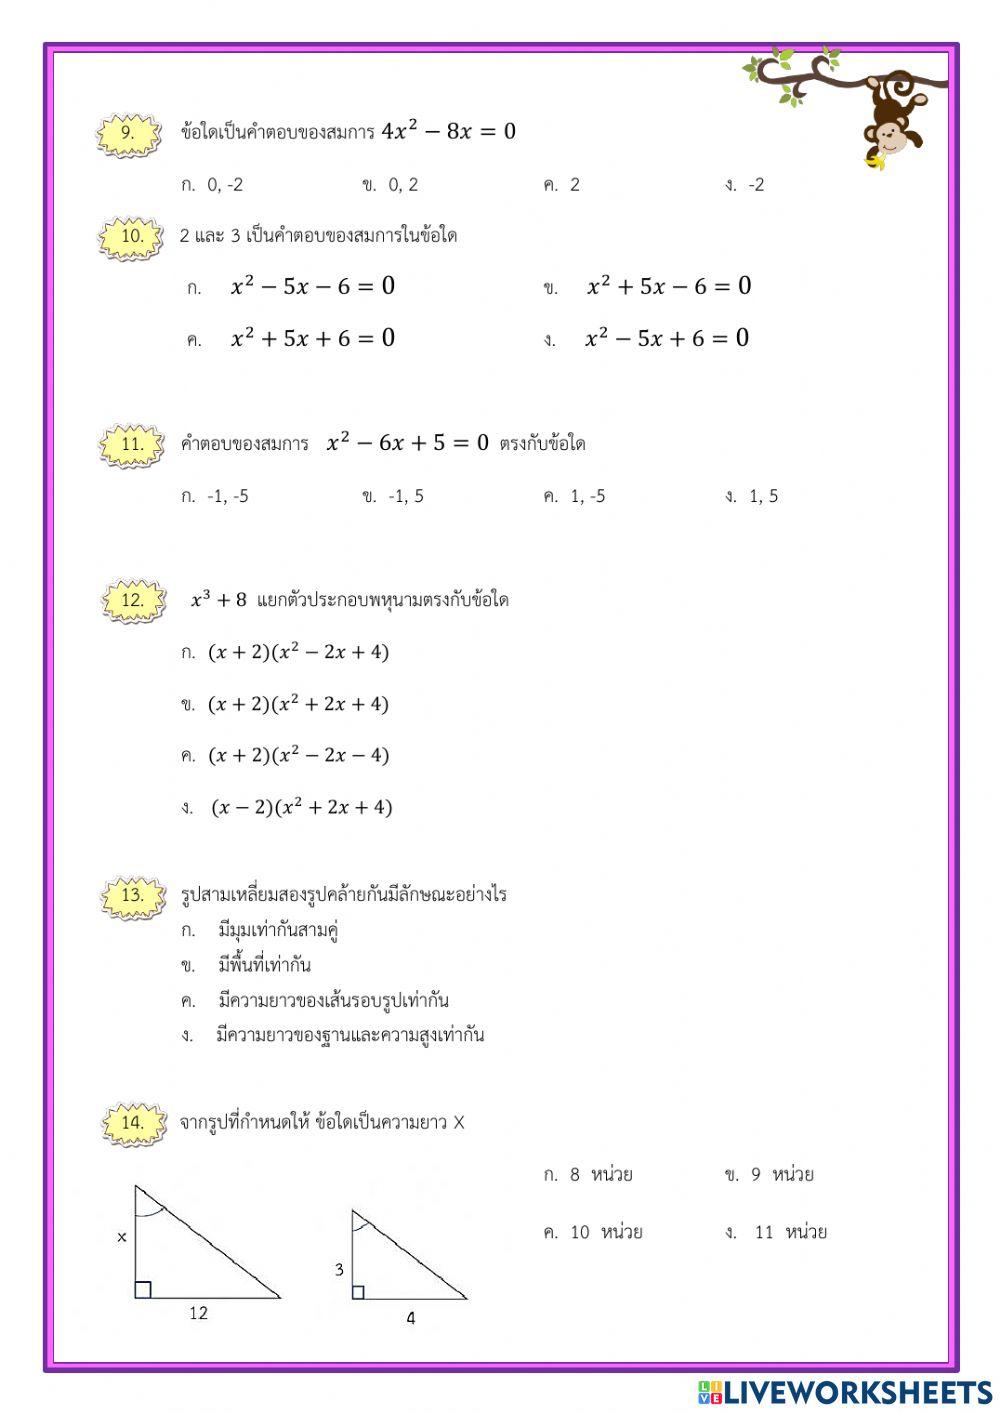 แบบทดสอบปลายภาควิชาคณิตศาสตร์ 1-2564